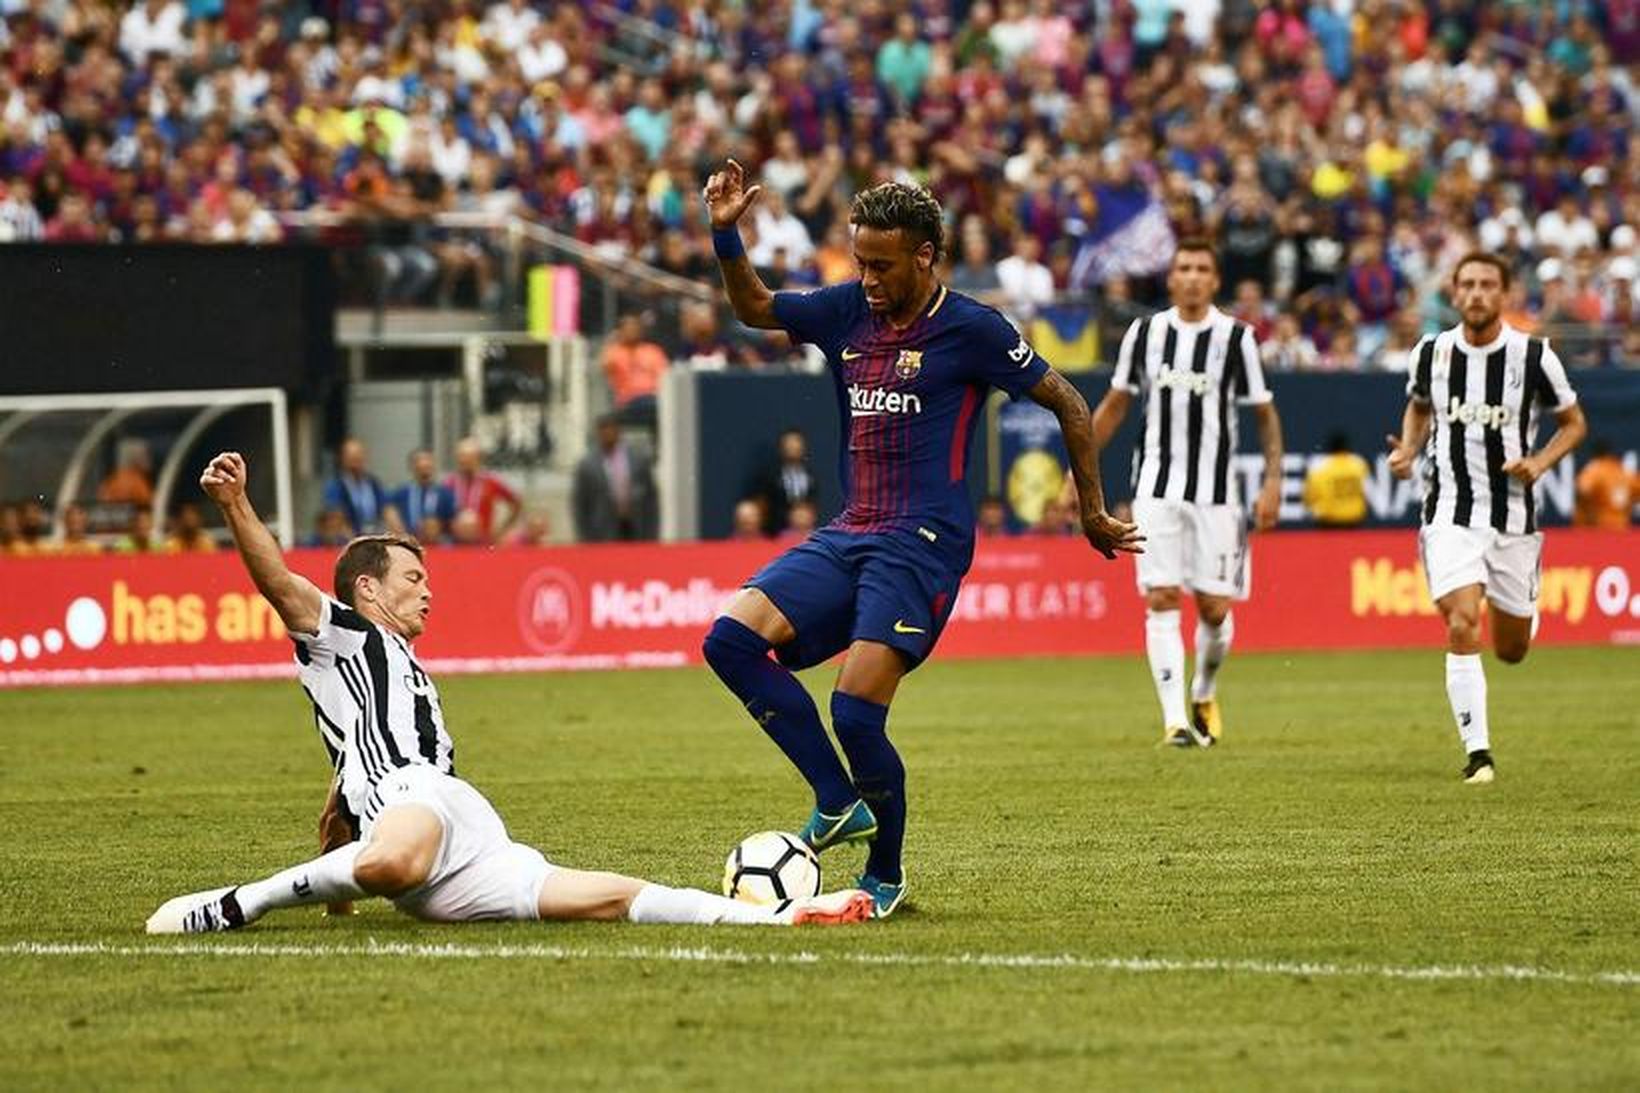 Neymar sækir að marki Juventus í leiknum í kvöld.